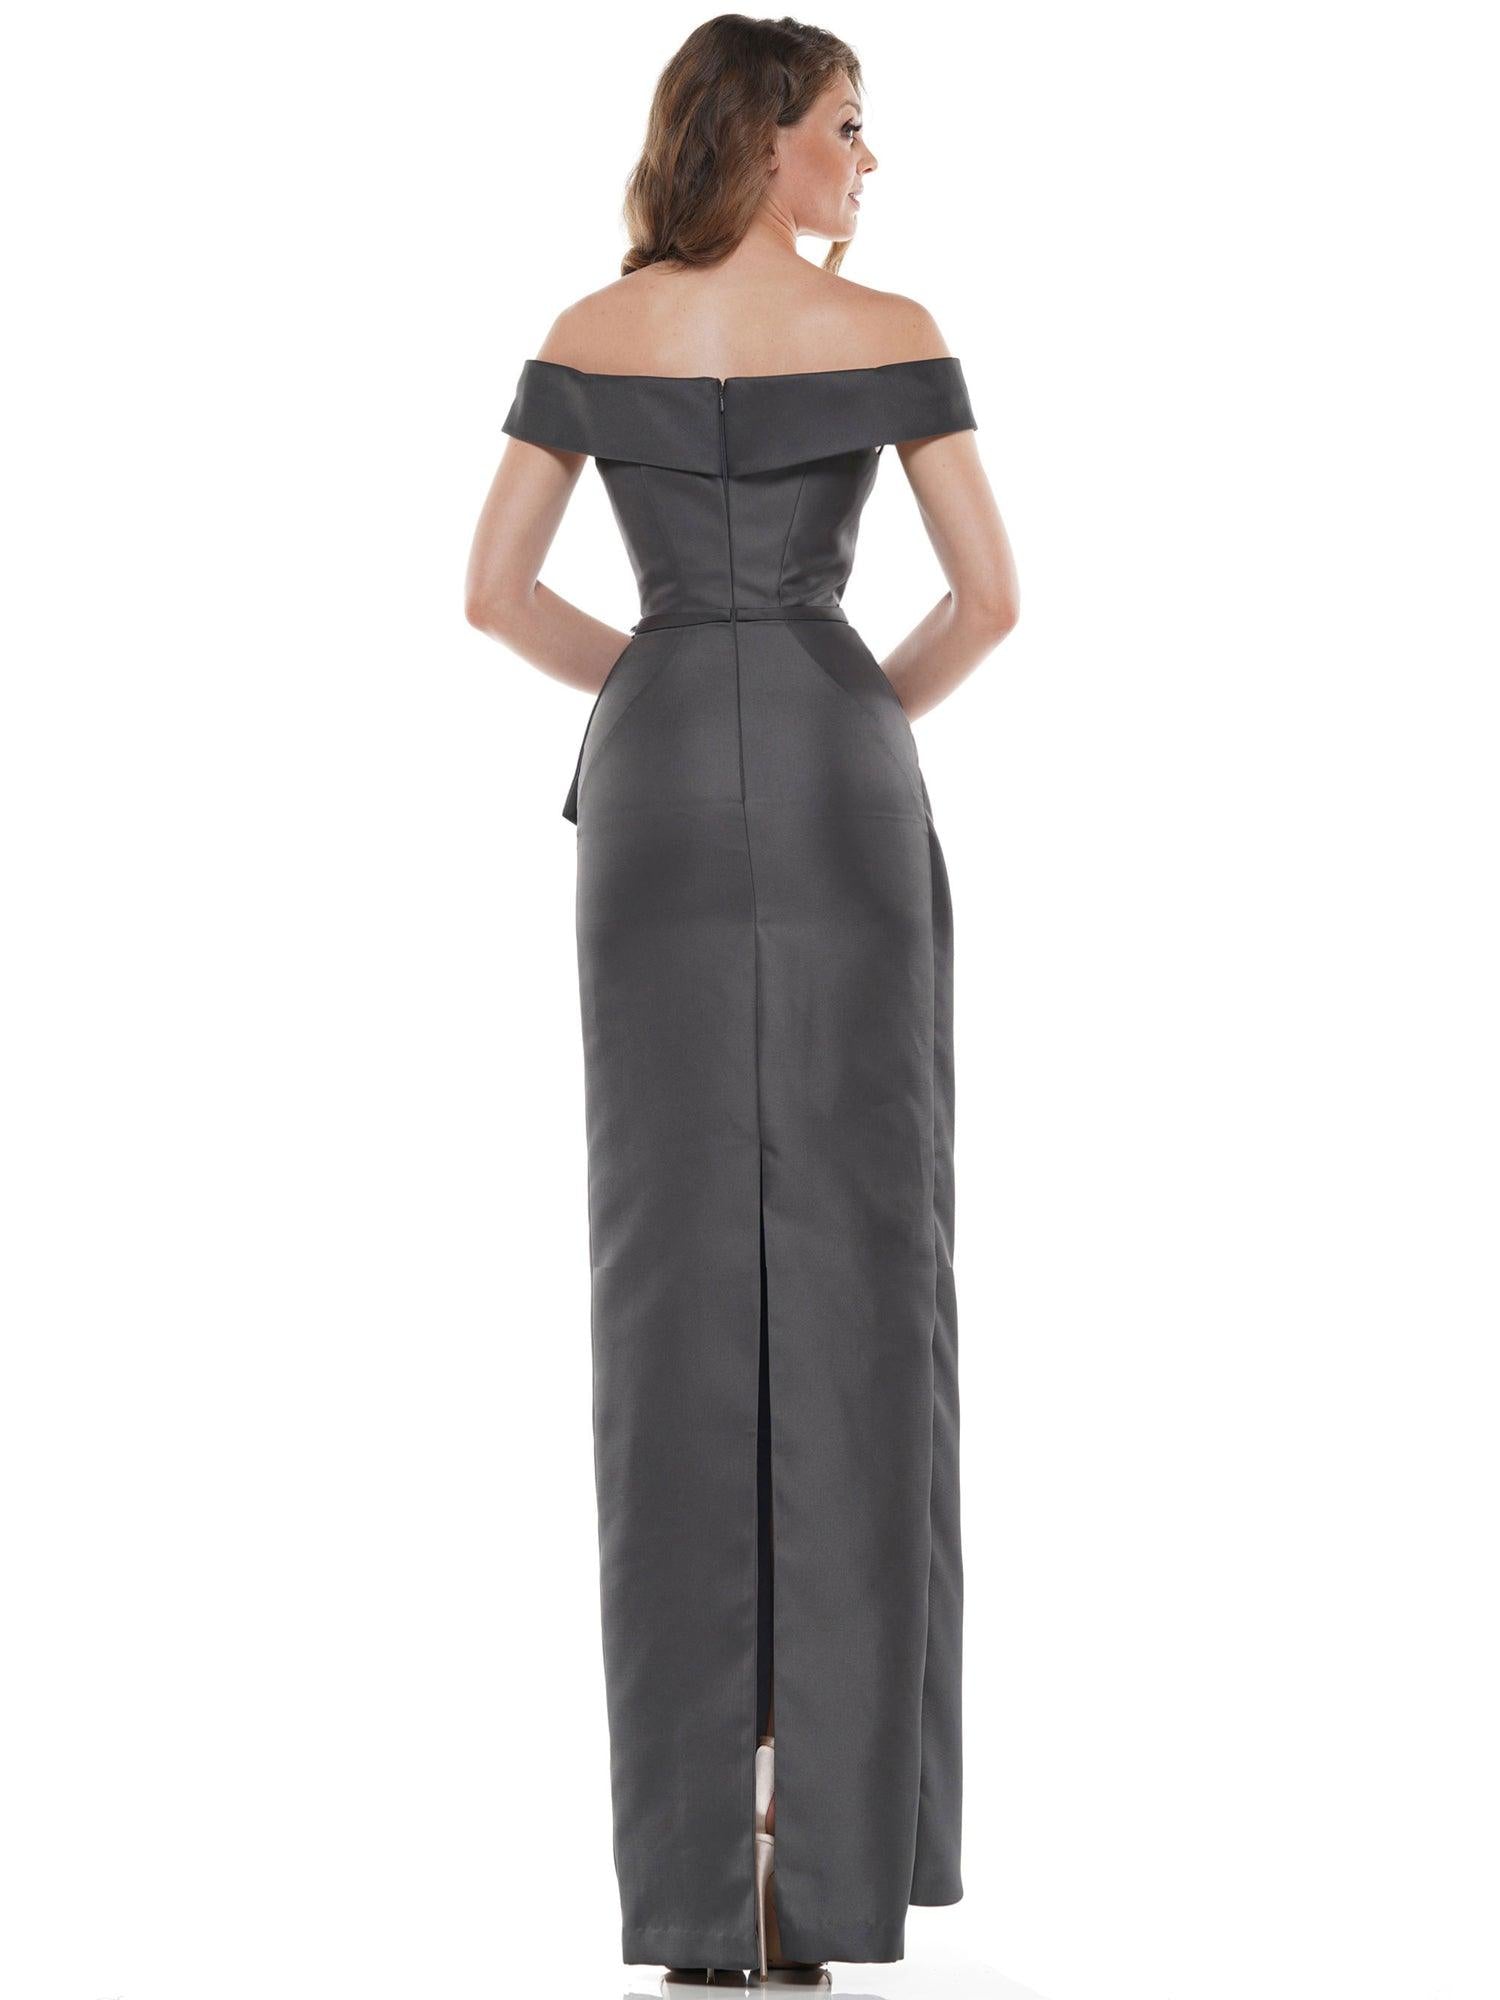 Marsoni Long Formal Off Shoulder Satin Dress 1087 - The Dress Outlet